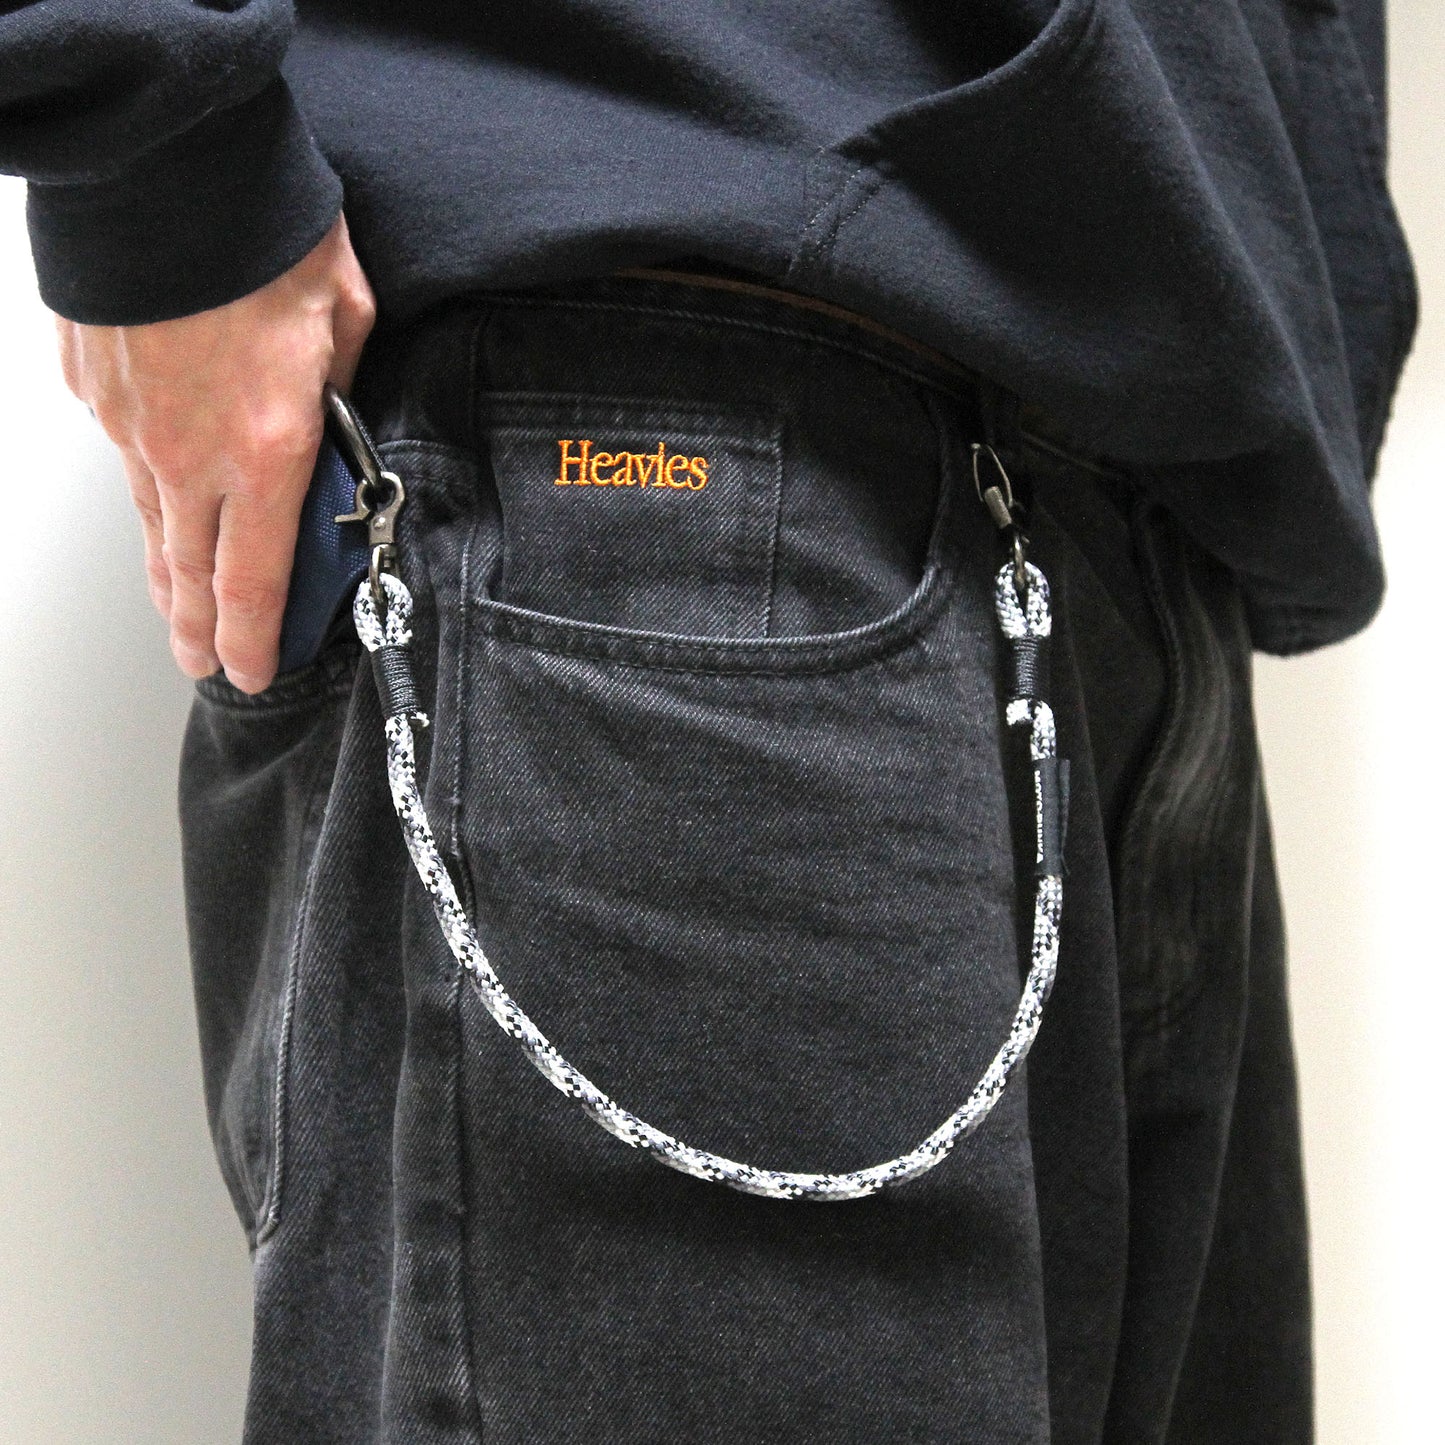 【予約期間4月24日】MOTO-BUNKA X AGHARTA - Mini Wallet with Chain